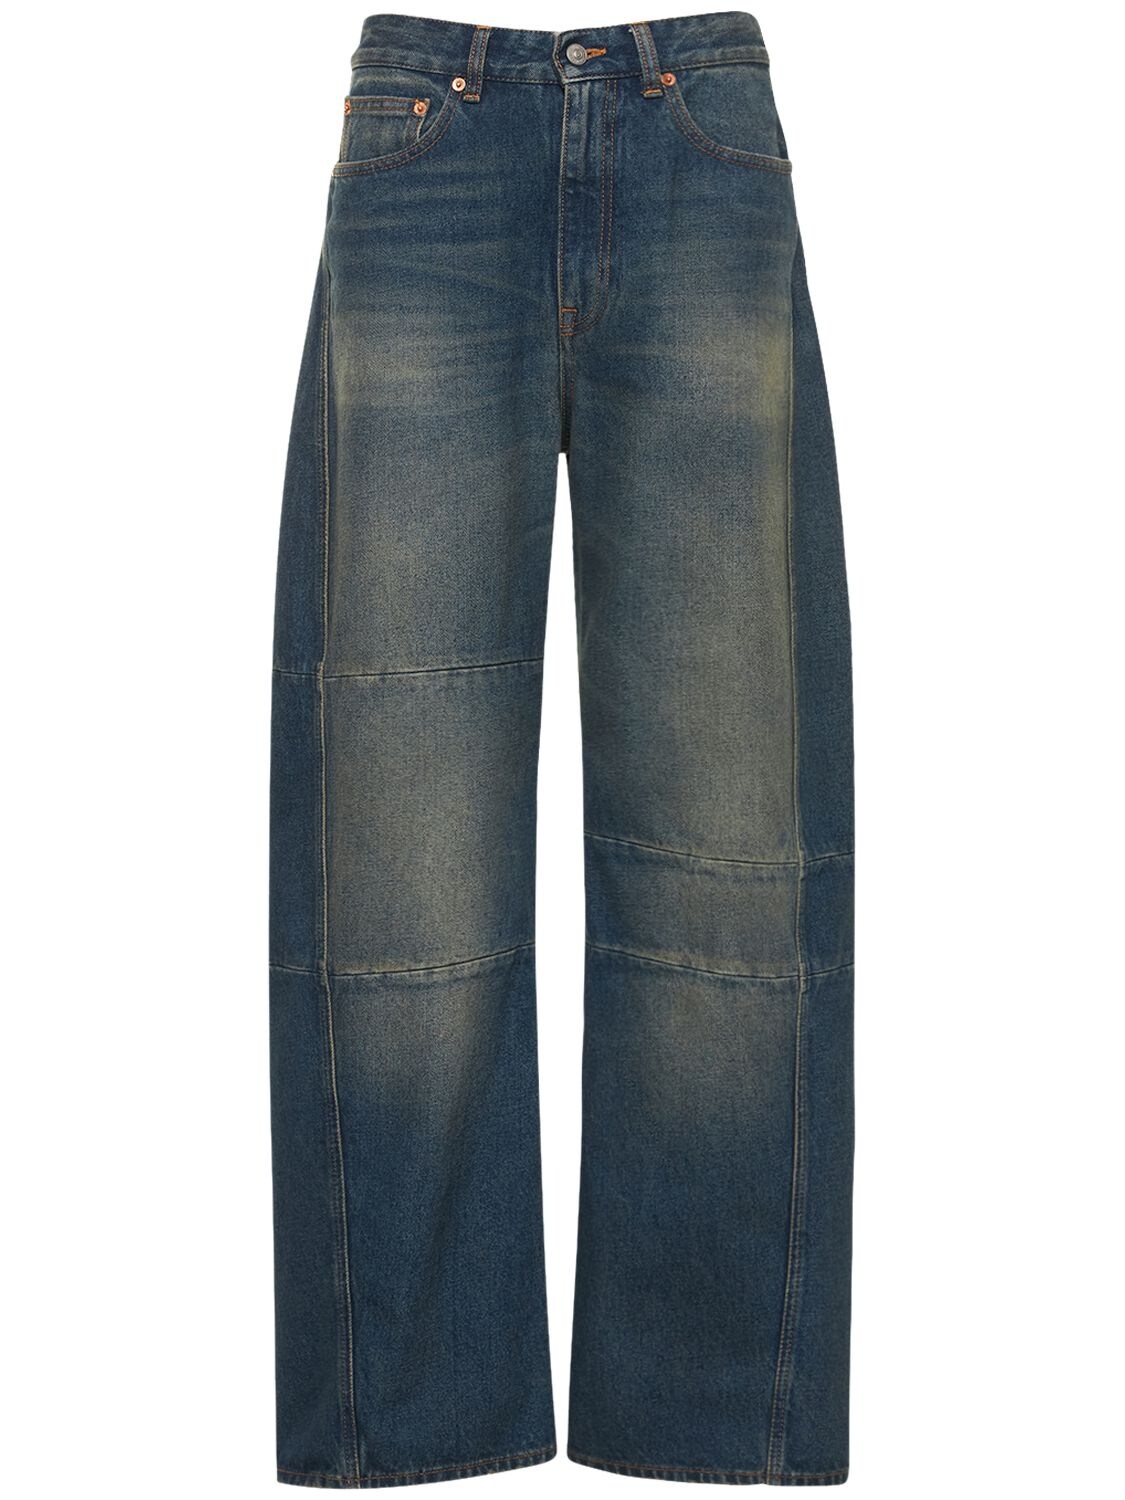 MM6 MAISON MARGIELA Wide High Rise Cotton Denim Jeans